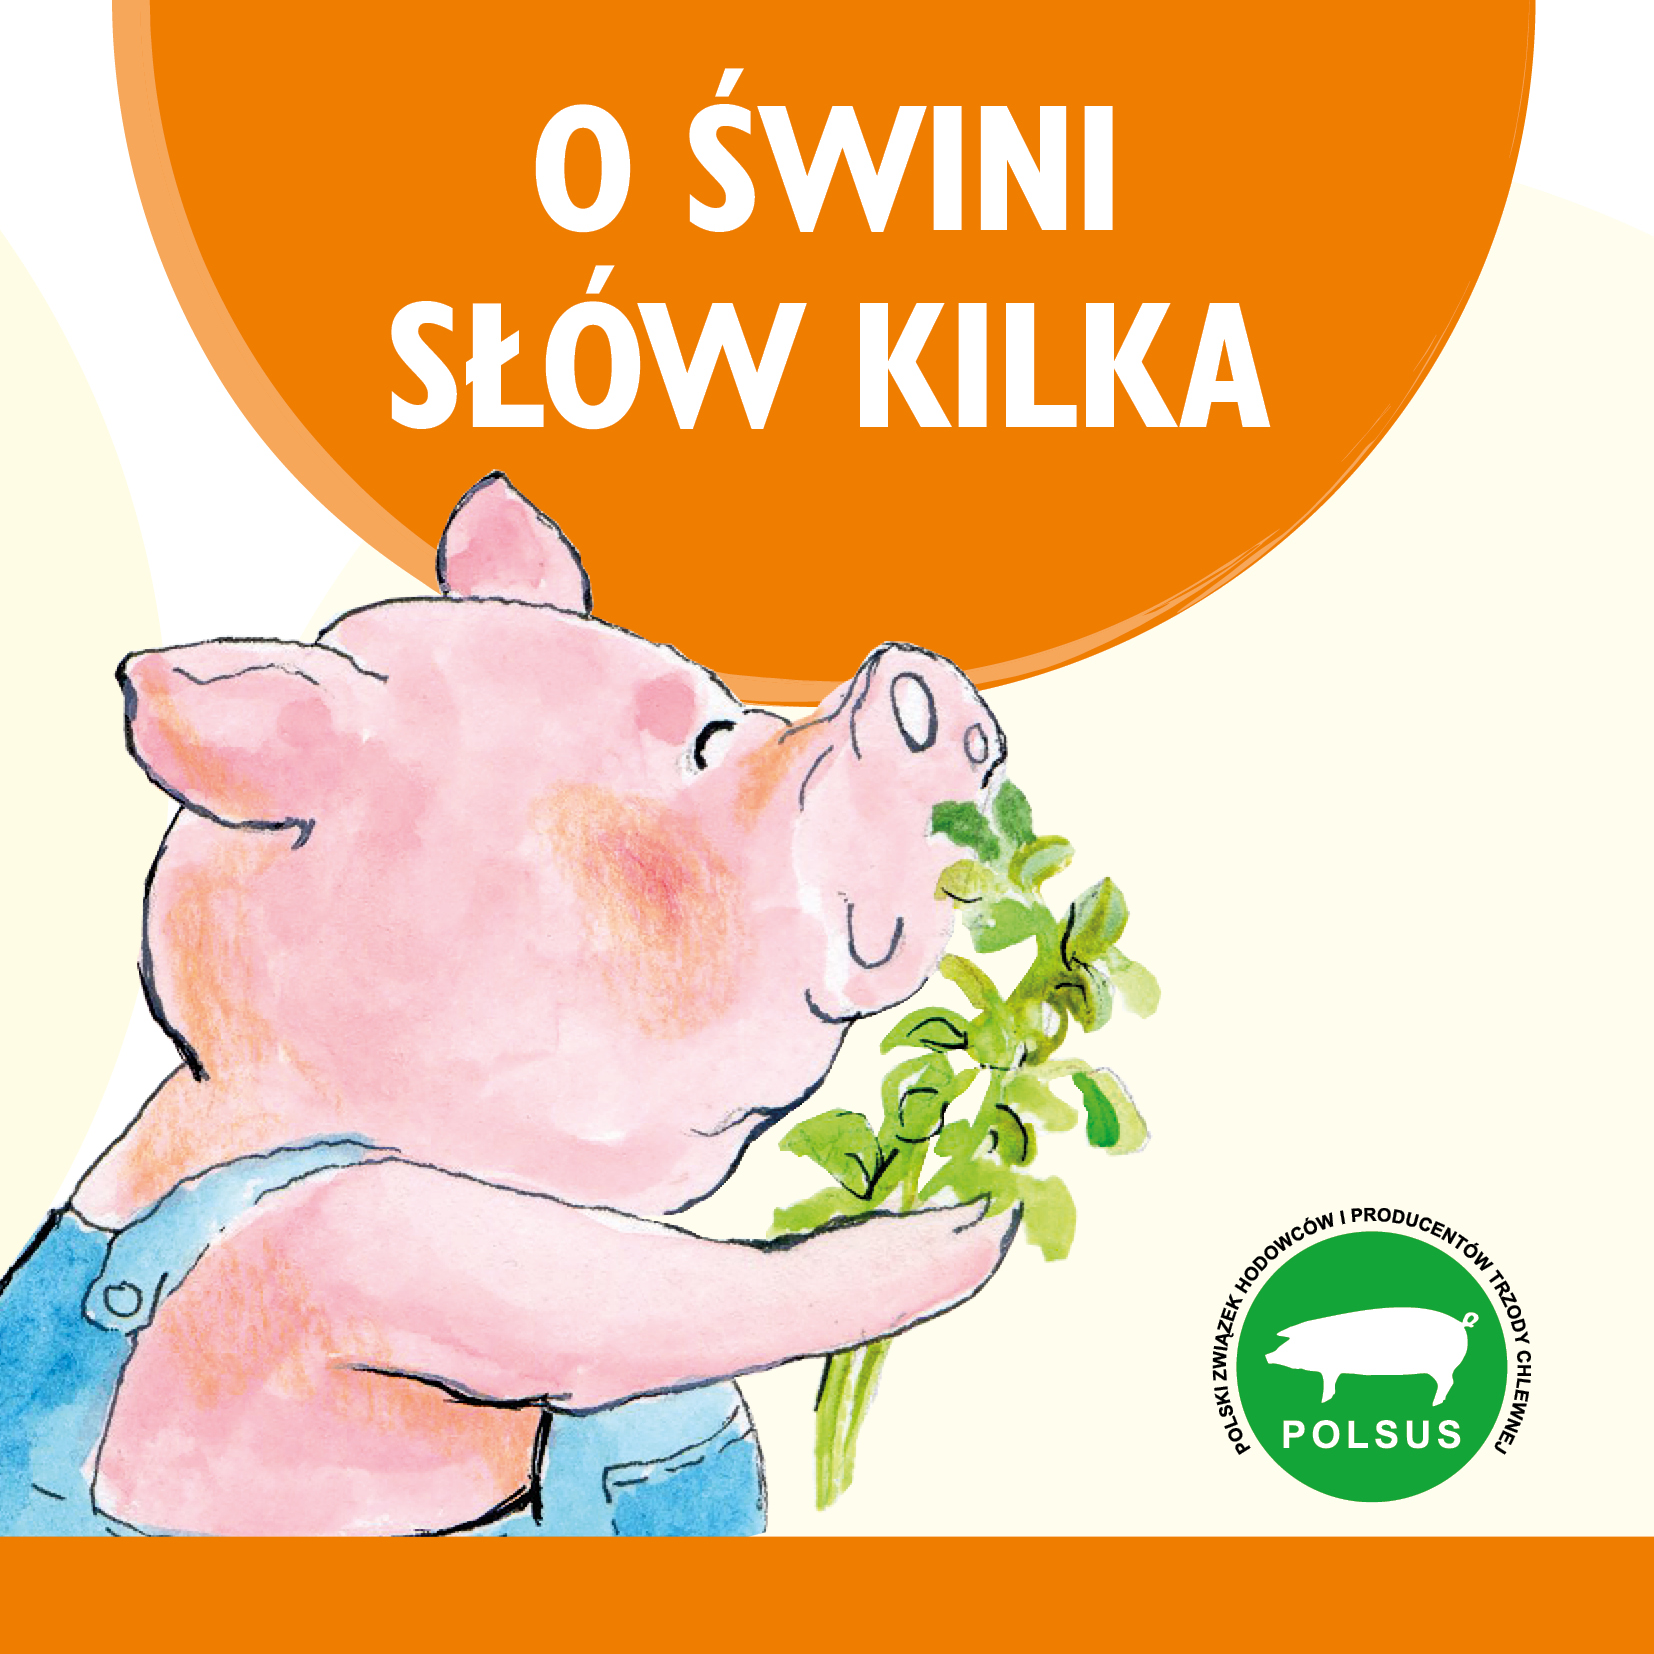 O swini slow kilka aktualizacja